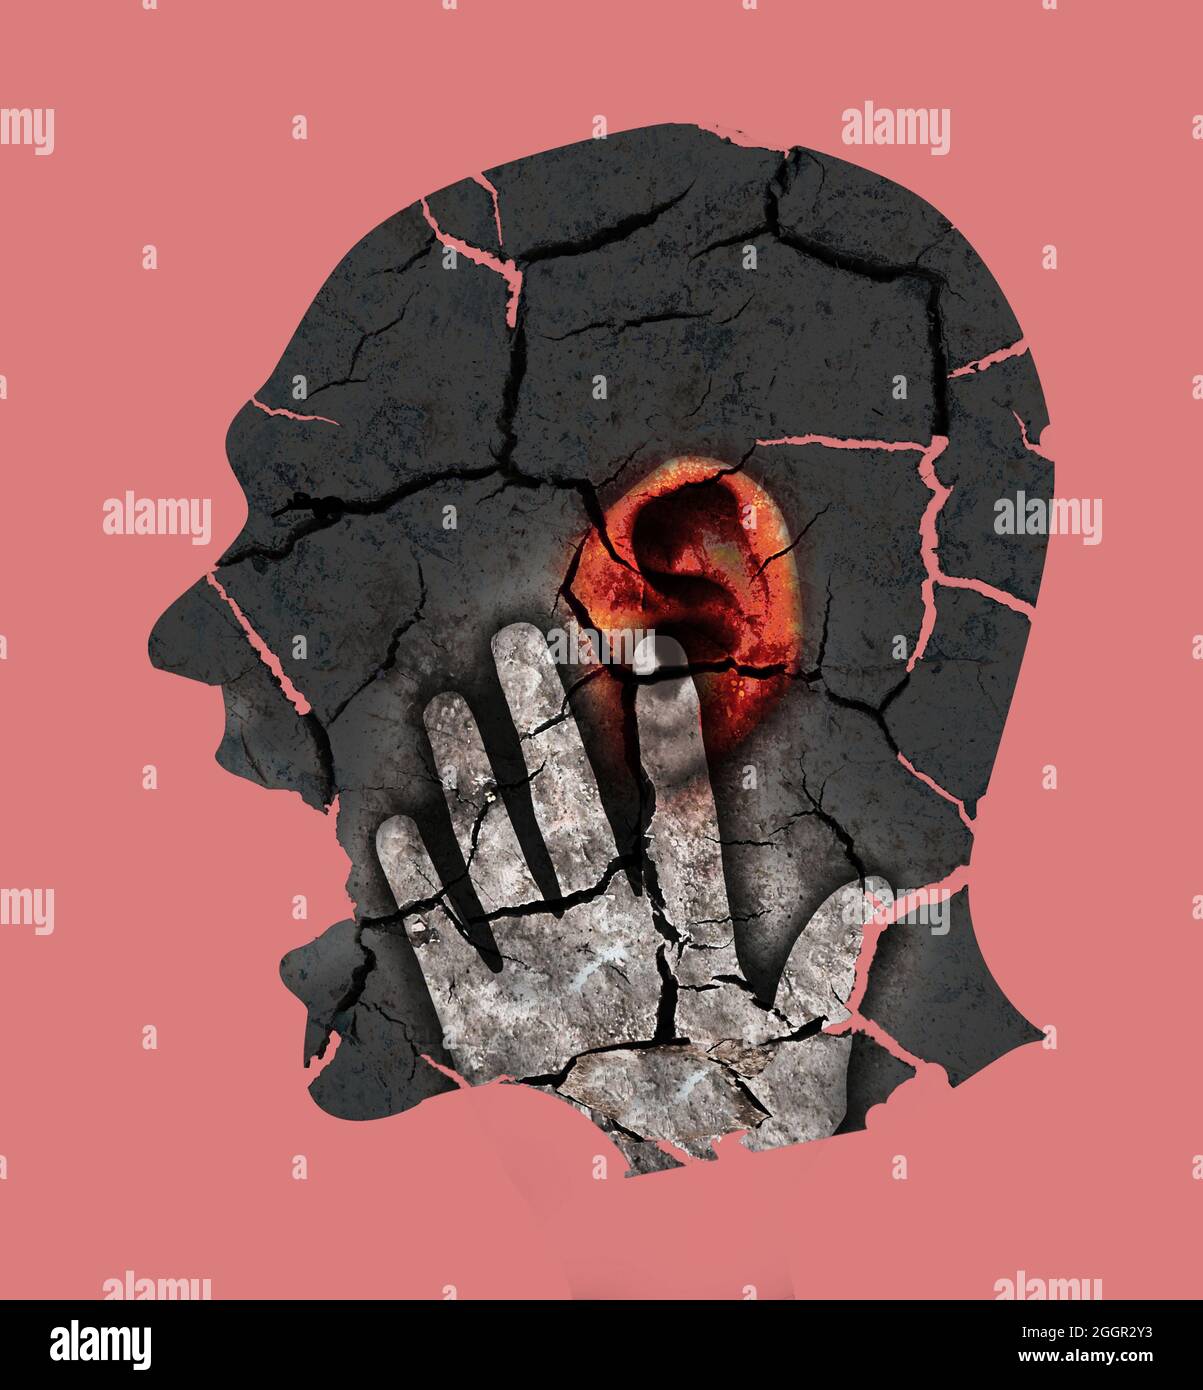 Mann mit rotem Ohr, symbolisiert Tinnitus, Ohrprobleme, Wahnsinn. Männlicher Kopf stilisiertes Profil. Fotomontage mit trockener, rissiger Erde. Stockfoto